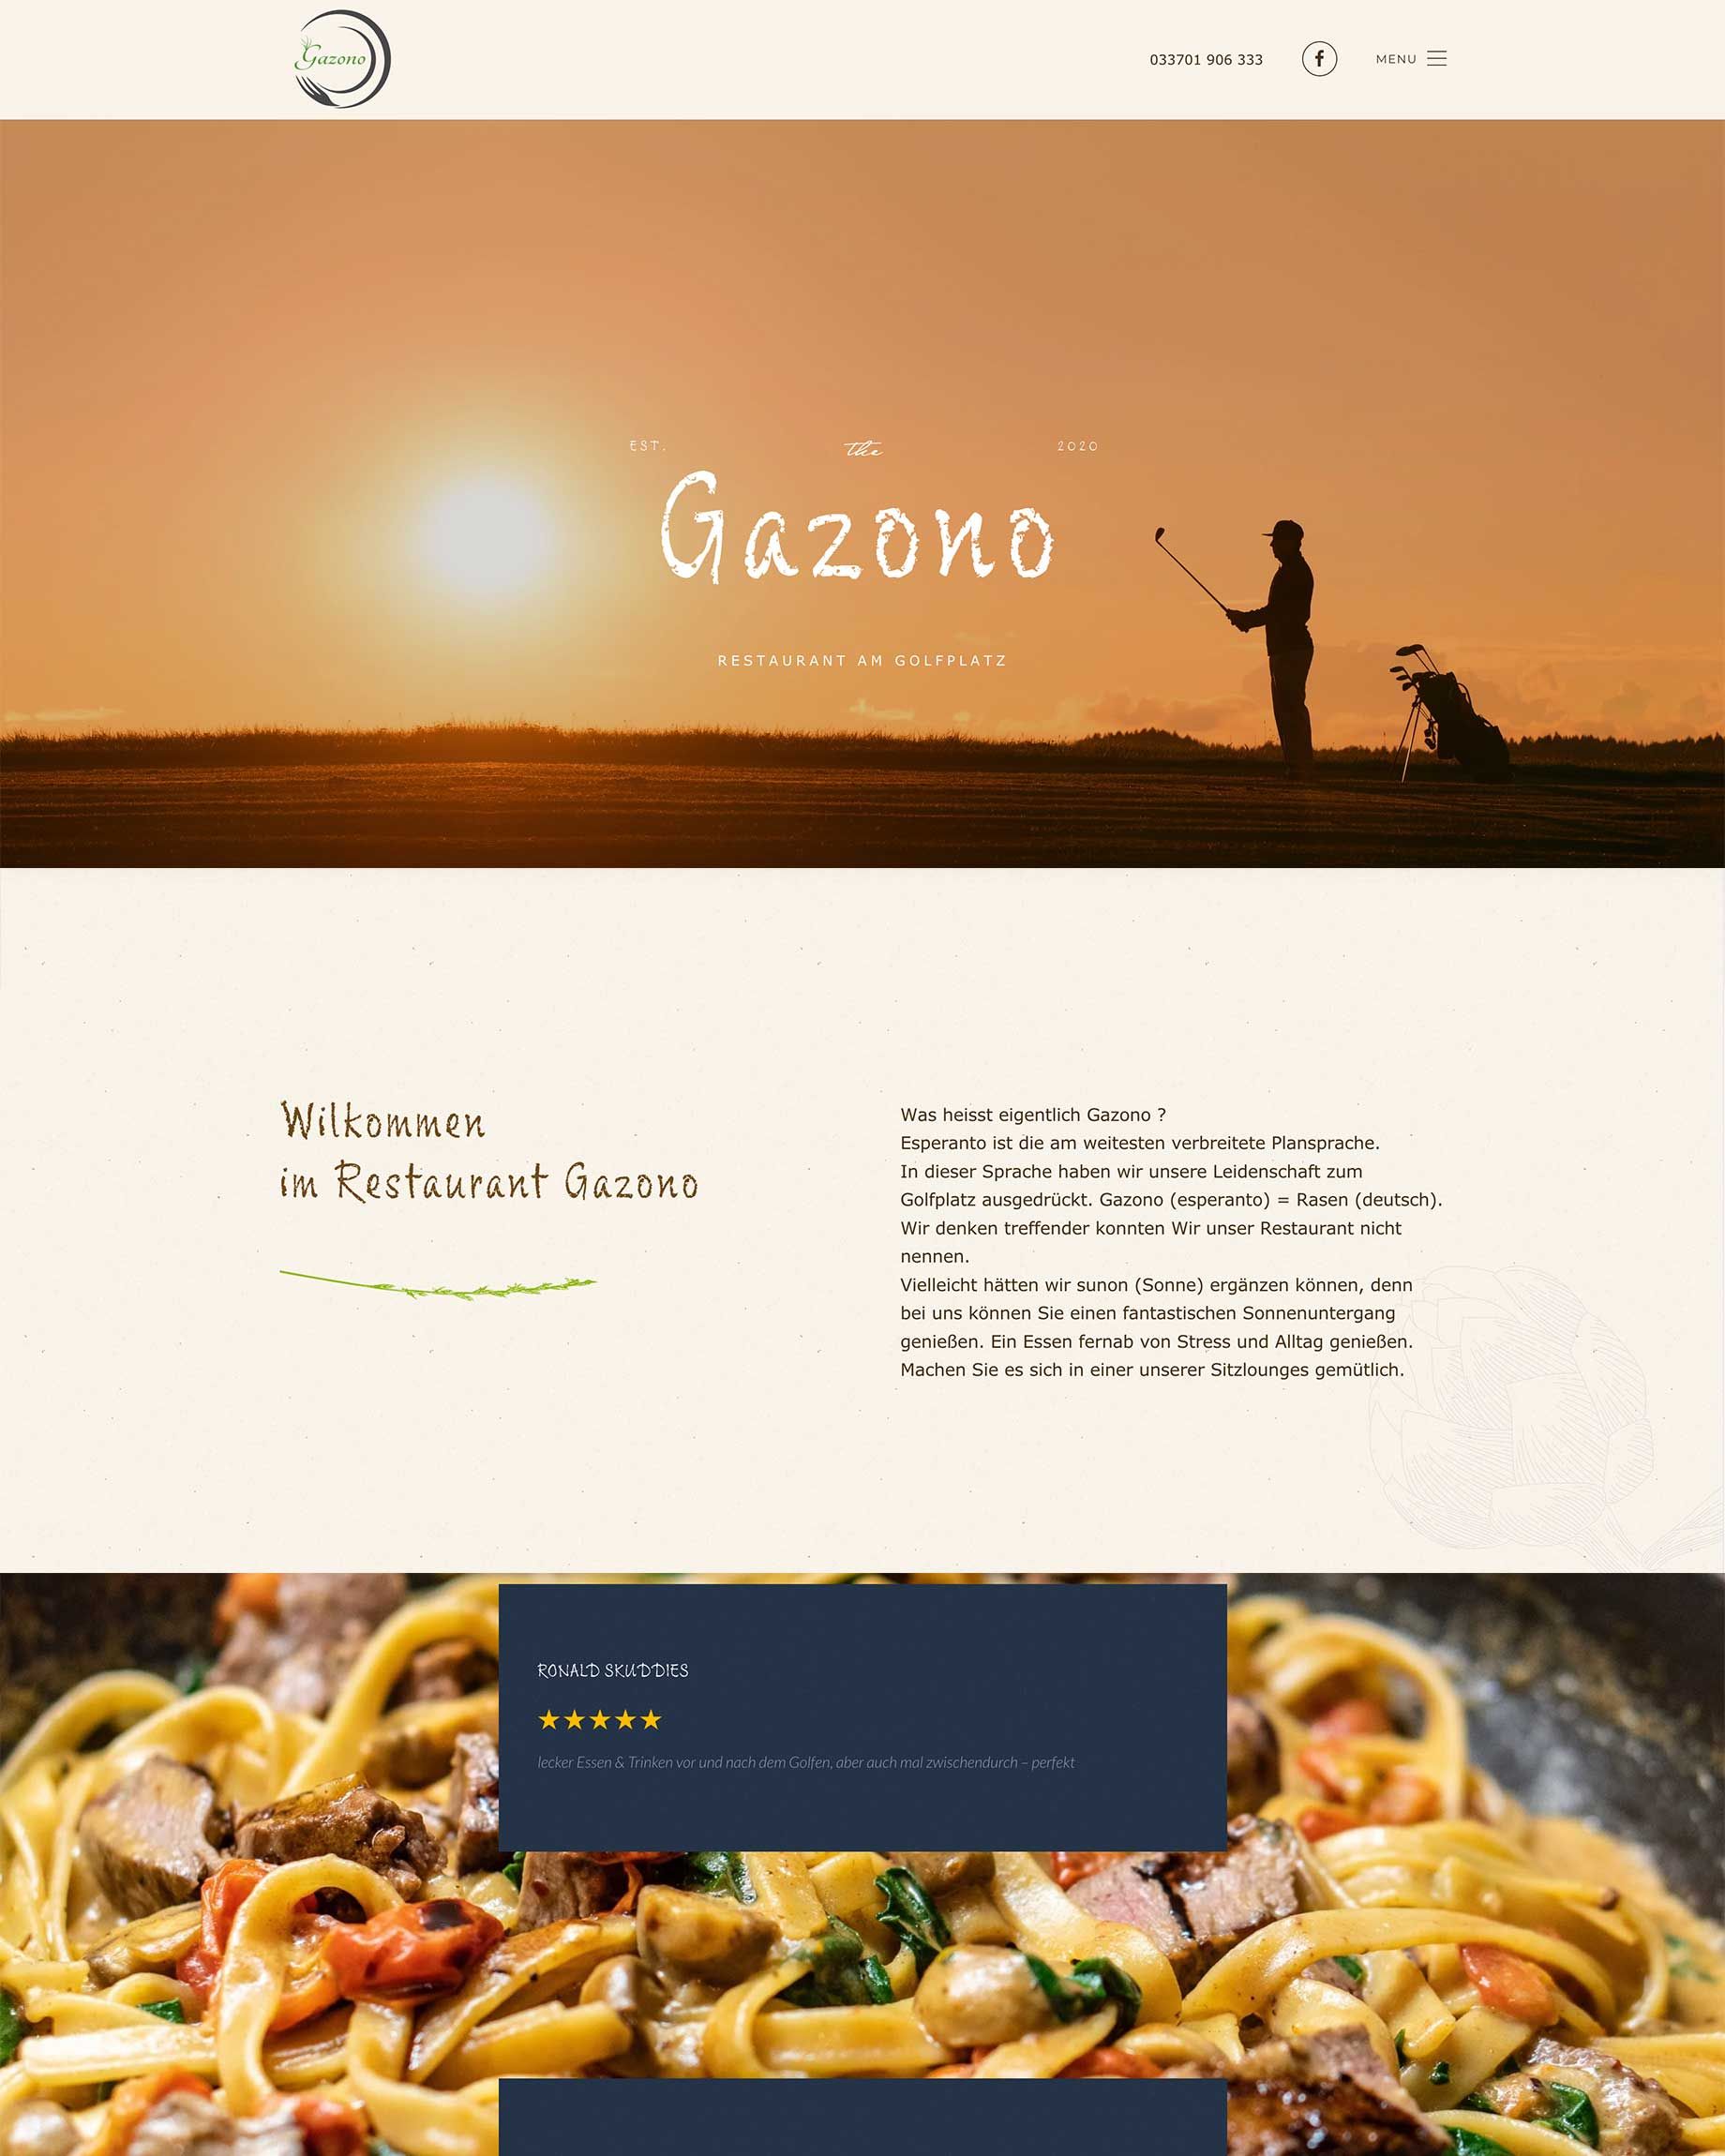 webdesign für restaurant gazono